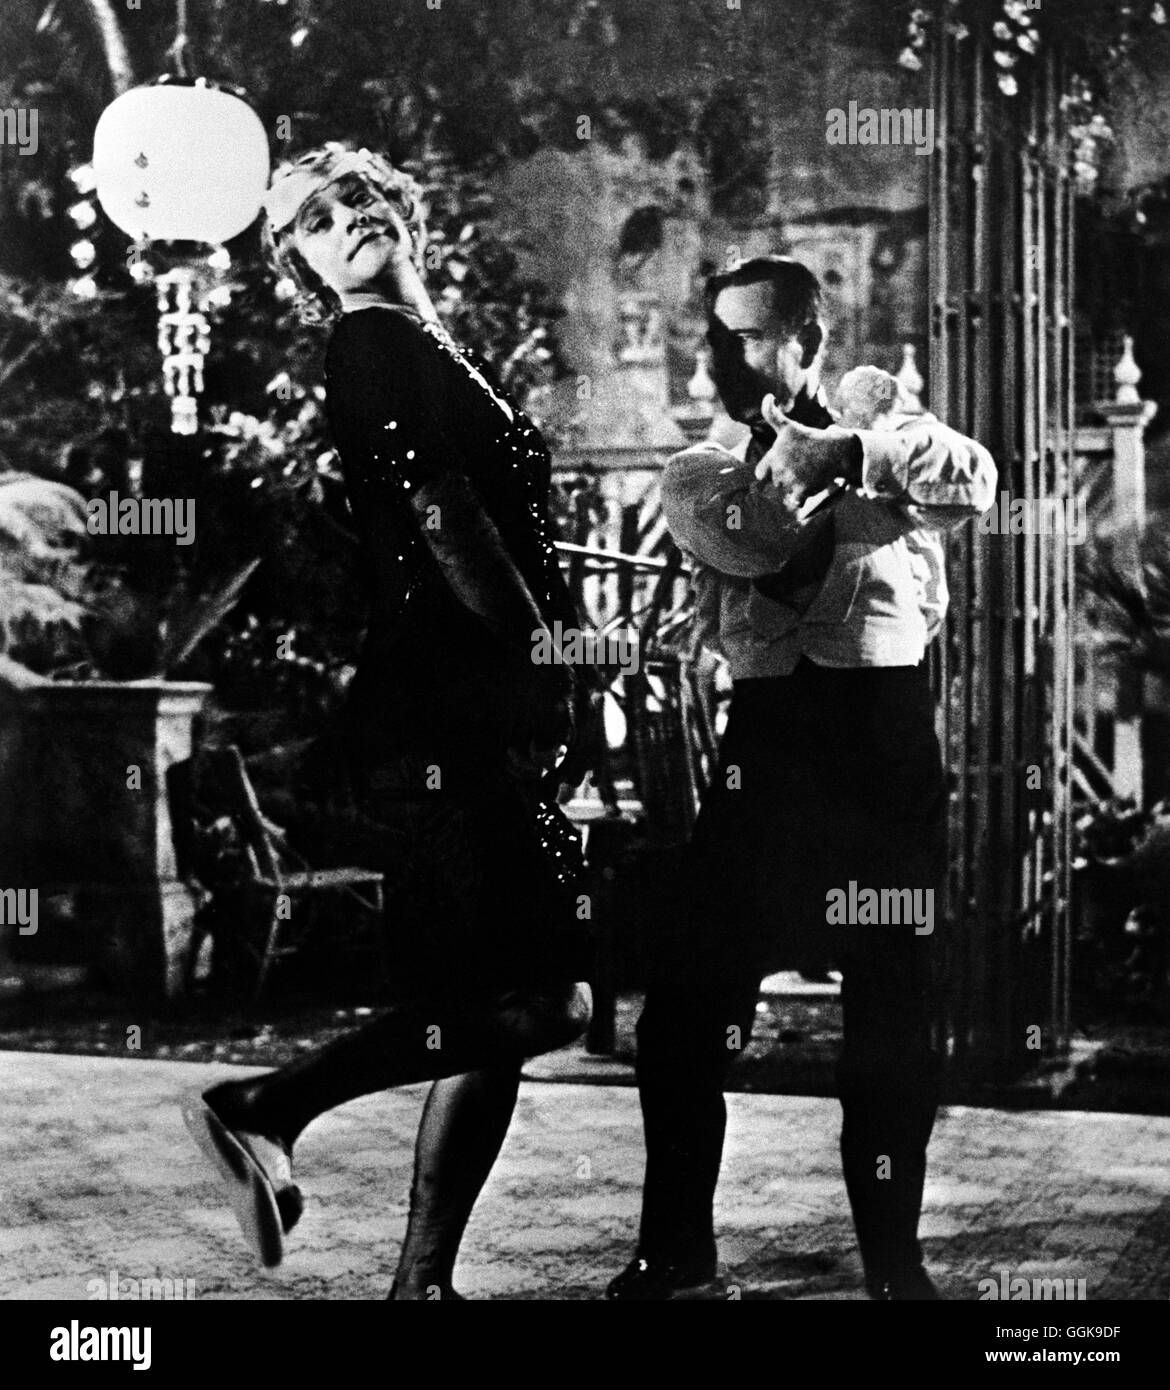 MANCHE MÖGEN'S HEISS / A qualcuno piace caldo USA 1959 / Billy Wilder Szene beim Tanzen: JACK LEMMON (Jerry/Daphne), JOE E. marrone (Osgood) Regie: Billy Wilder aka. A qualcuno piace caldo Foto Stock